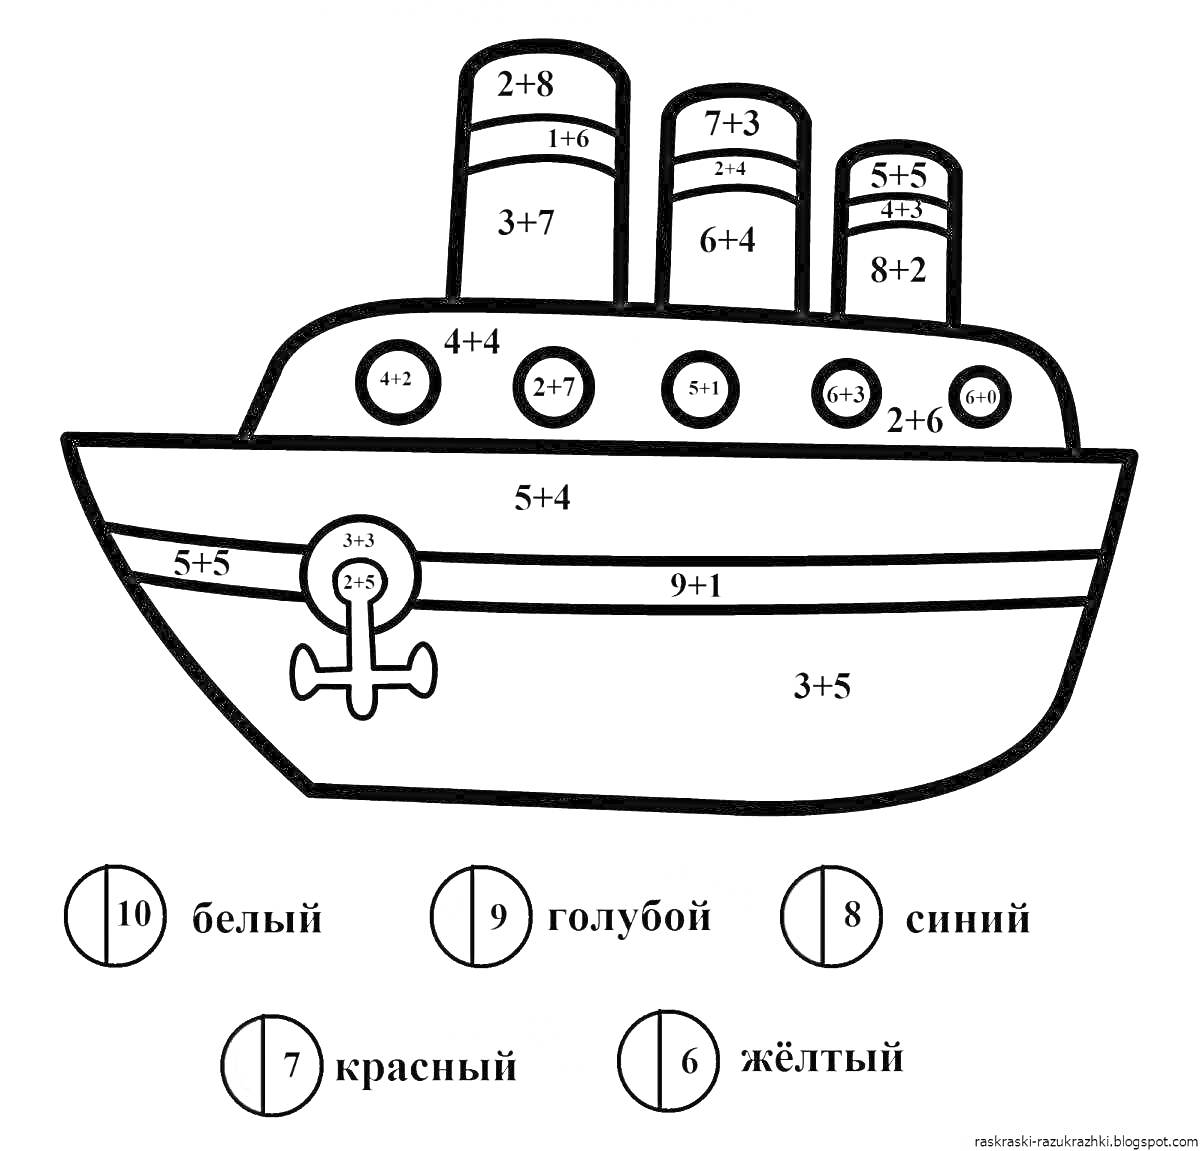 Раскраска Раскраска с кораблём и примерами сложения в пределах 10. На картинке изображён корабль с примерами для решений.